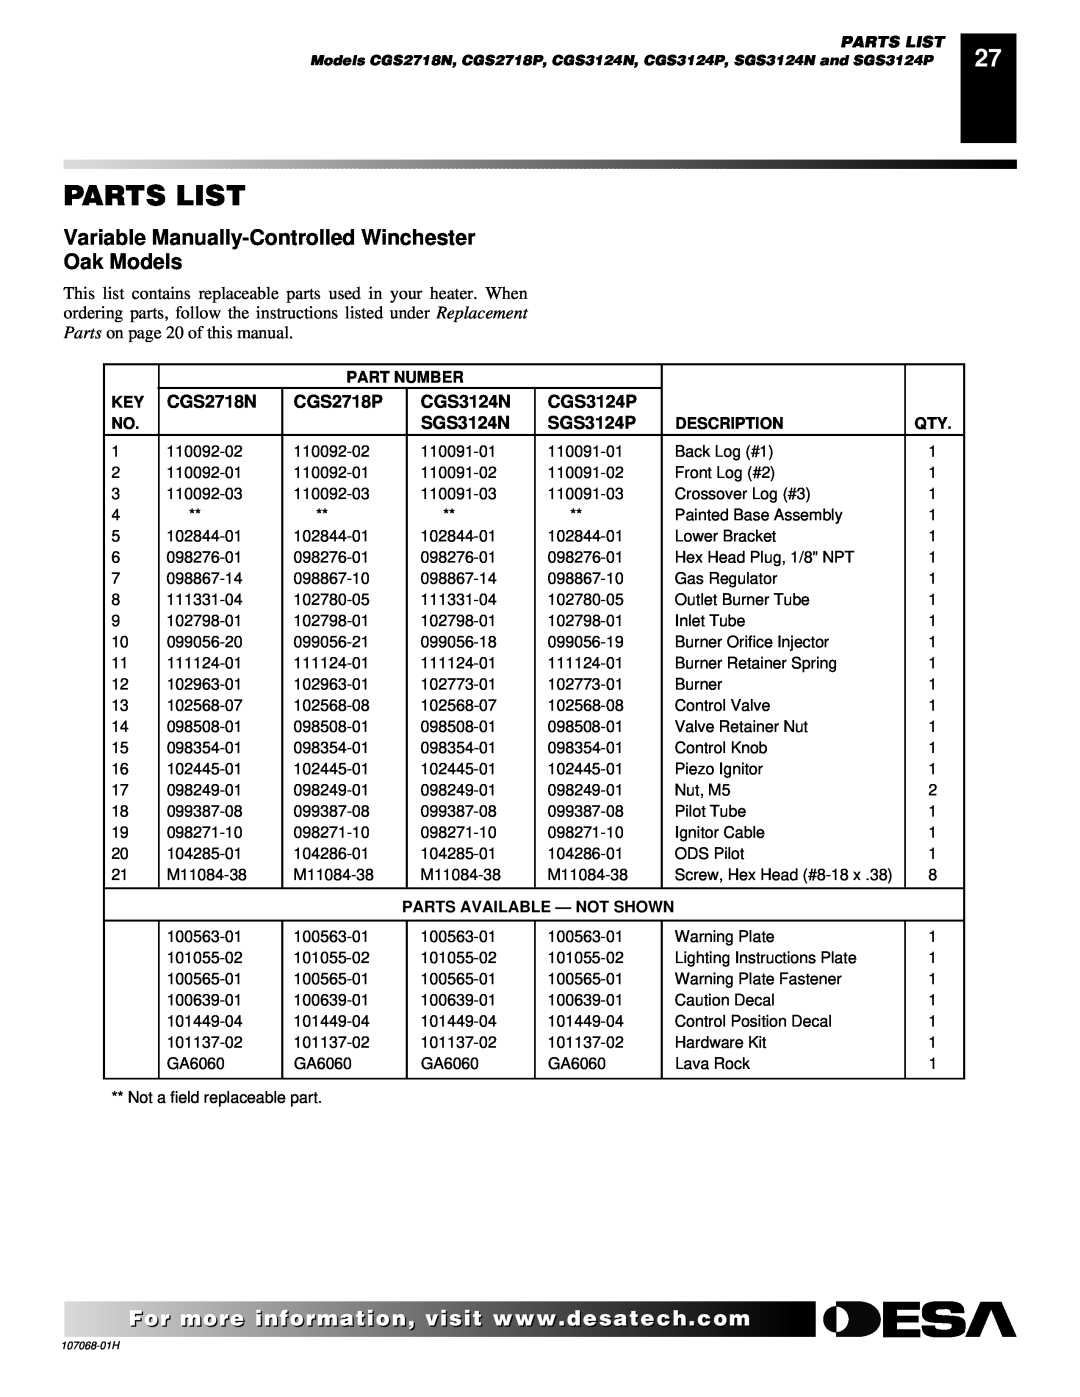 Desa SGS3124P, CLD3018PT, CLD3018NT Parts List, Variable Manually-ControlledWinchester Oak Models, Part Number, Description 